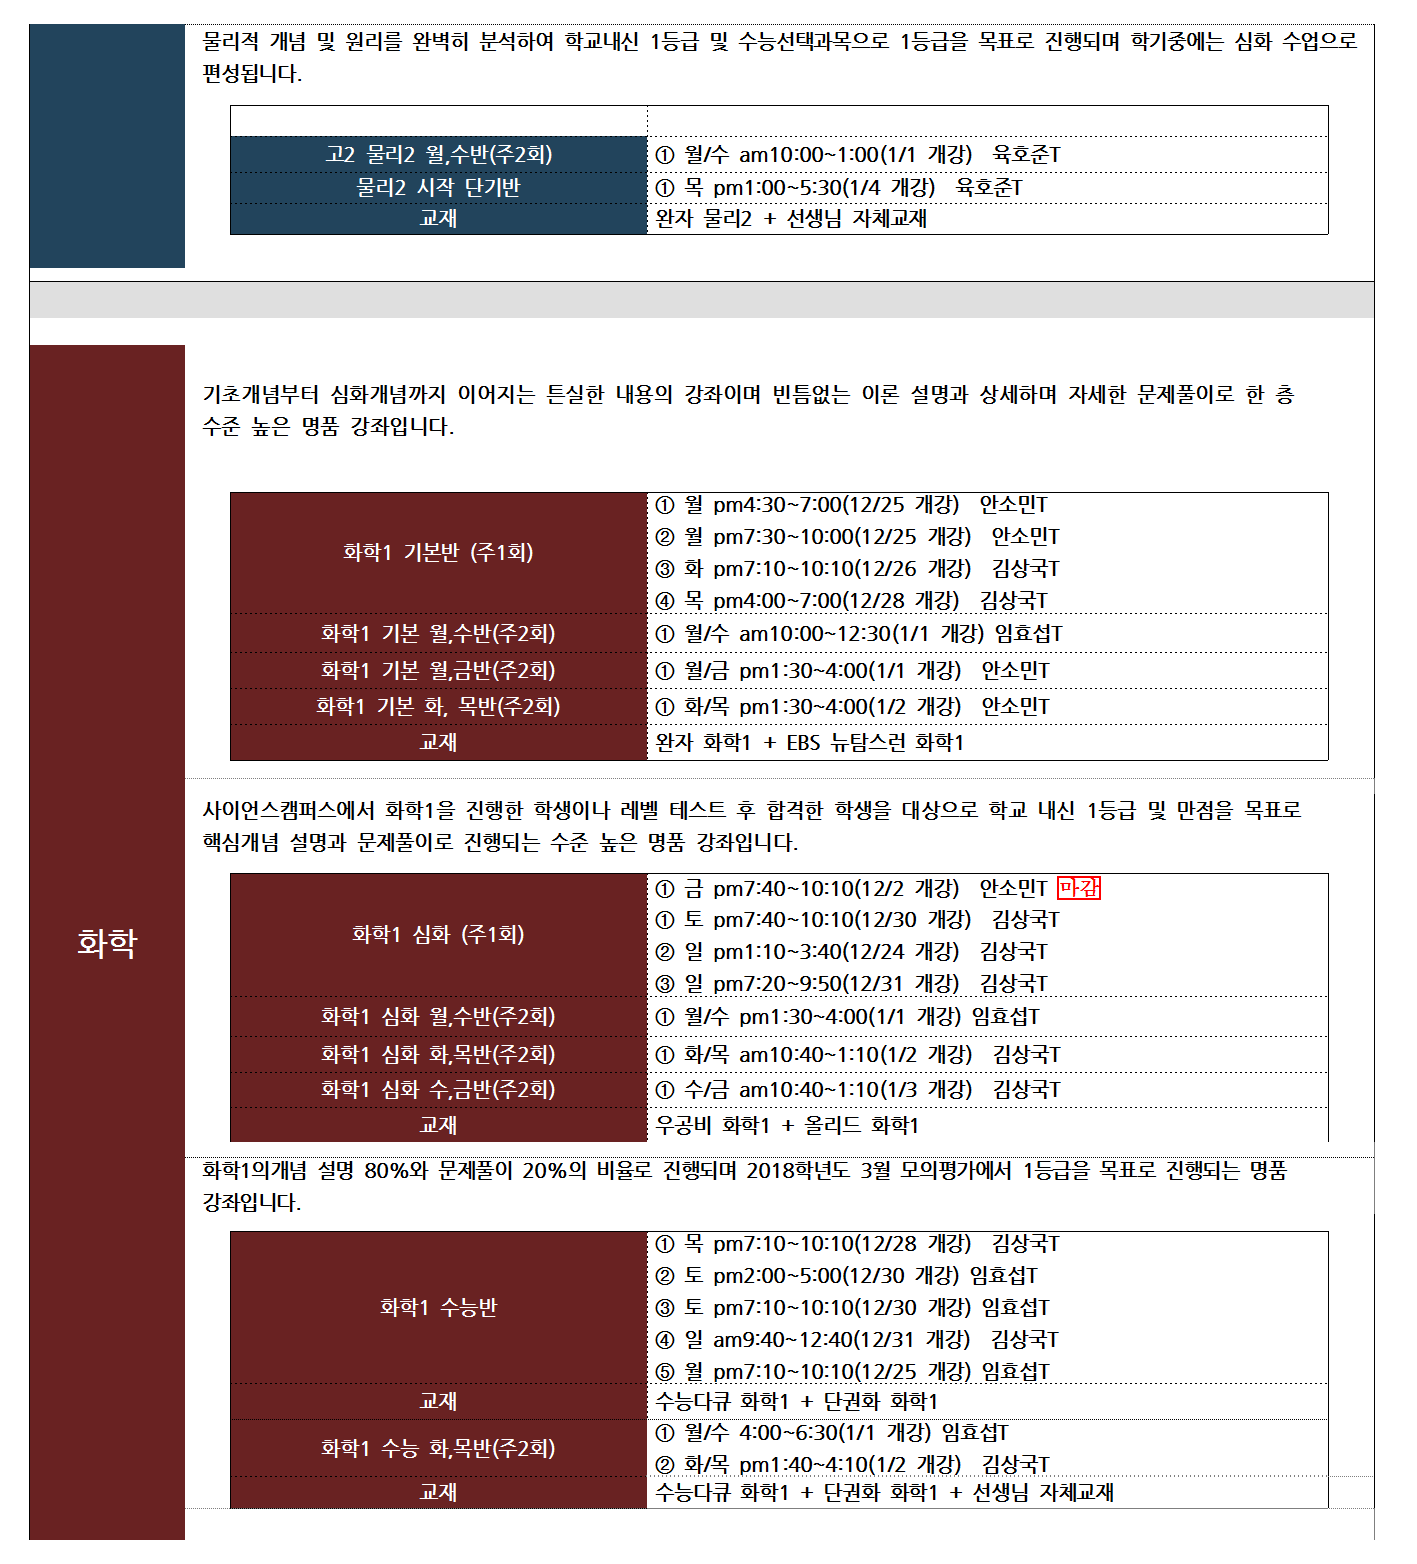 사이언스캠퍼스 2017 겨울방학시간표-1(추가시간표)004.png